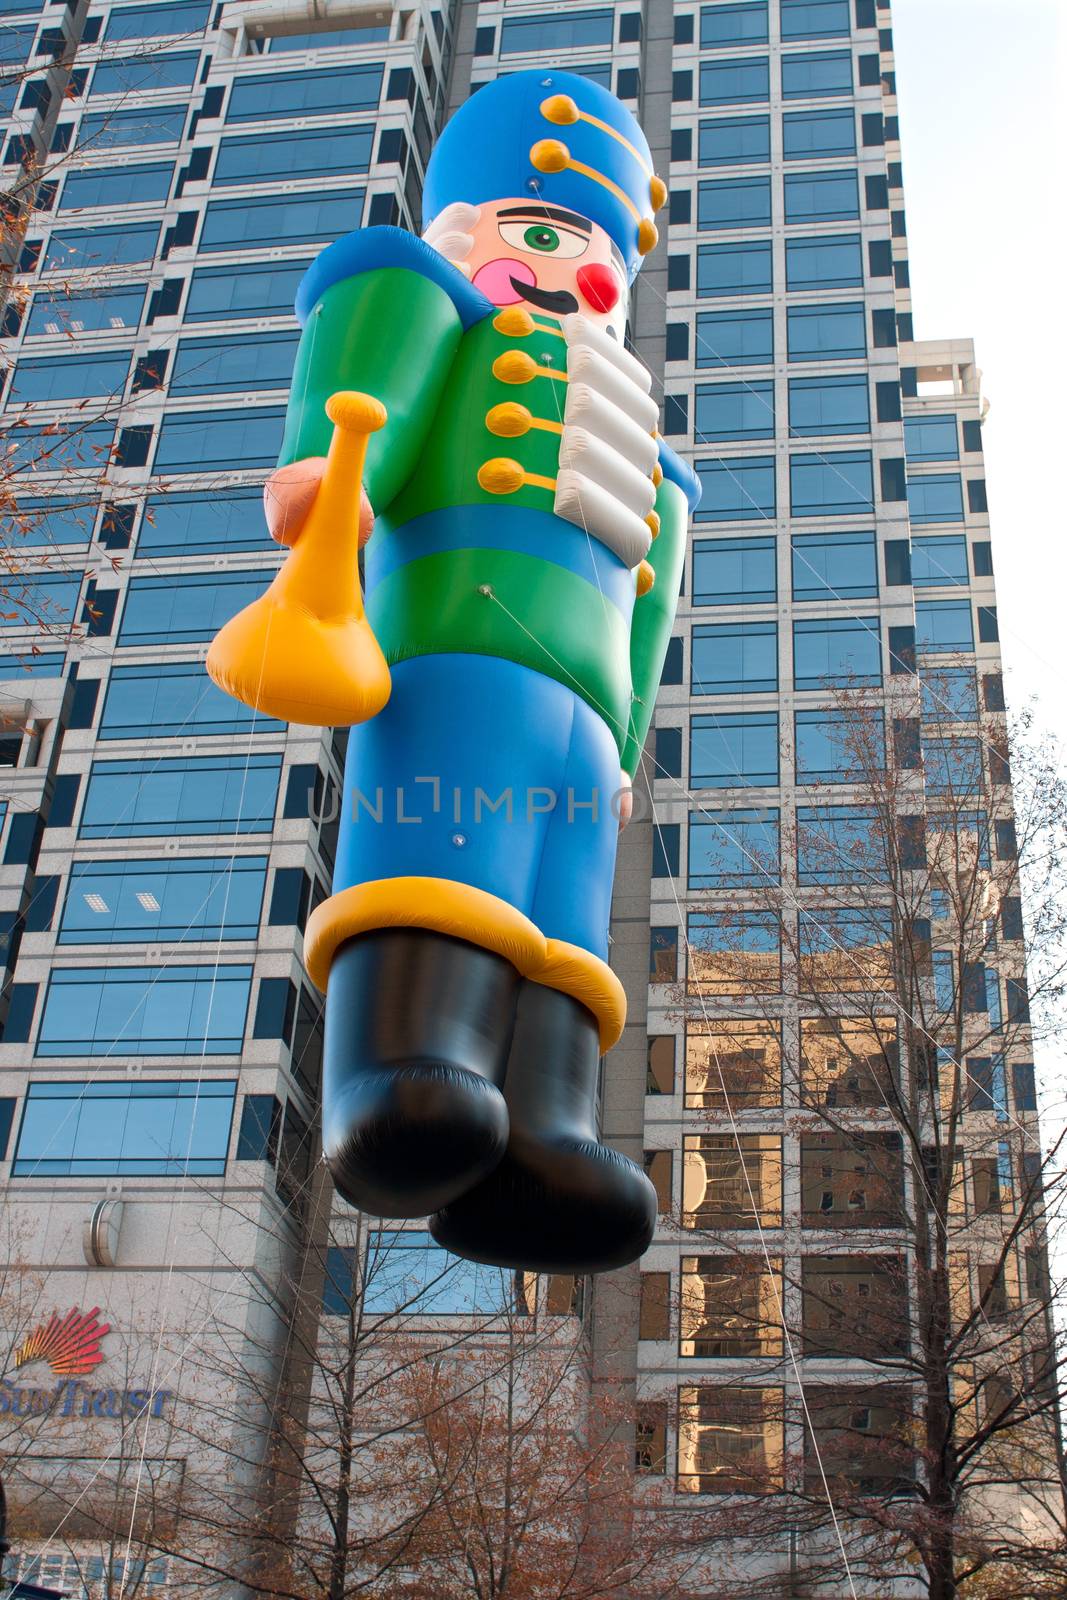 Toy Soldier Balloon Moves Through Atlanta Christmas Parade by BluIz60